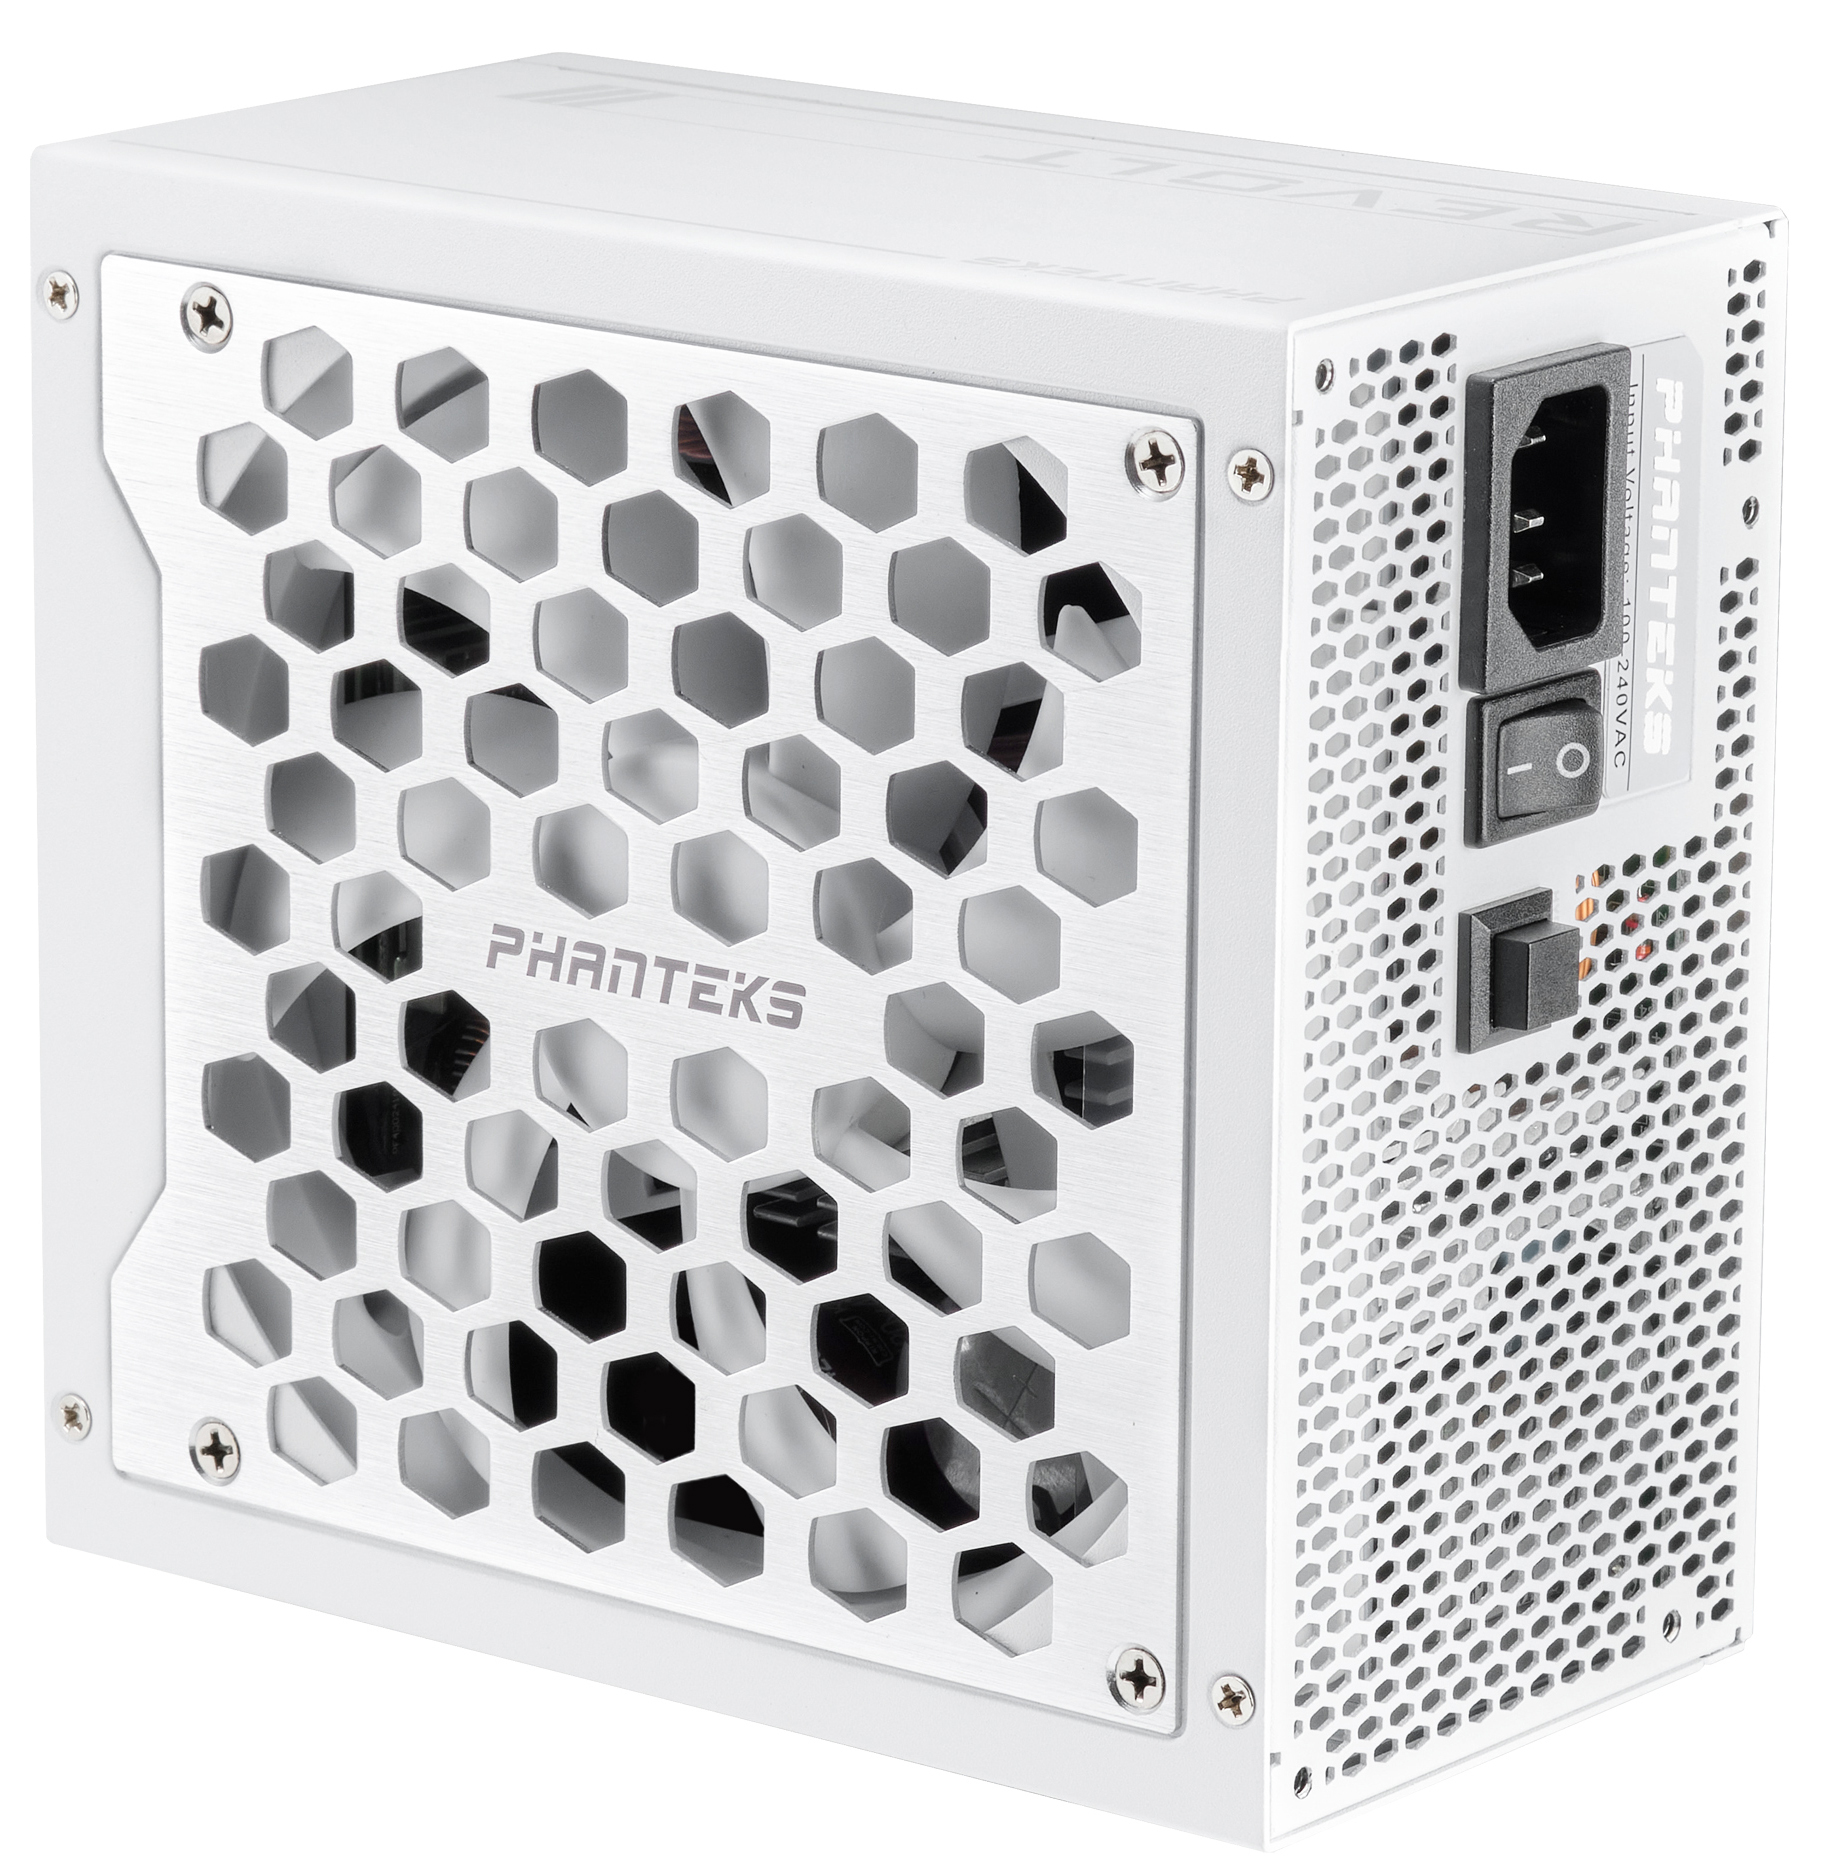 Phanteks - Fuente Modular Phanteks Revolt ATX 3.0 PCIe 5.0 1000W Platinum Branca (Sin Cables Incluídos)